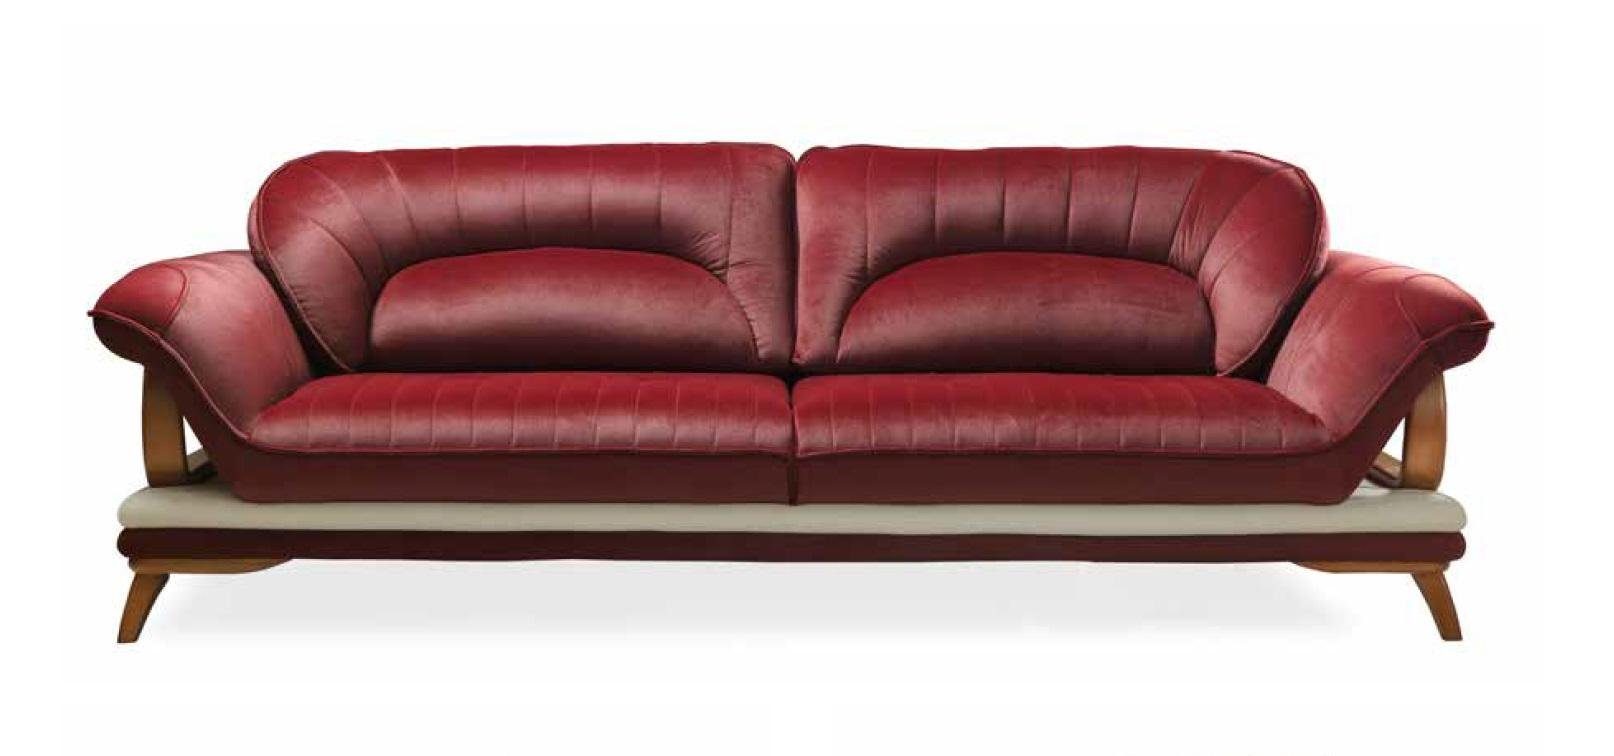 JVmoebel Sofa Luxus Couchgarnitur modernes stilvolles Made in Sitzer Design 3+1 Design, Europe